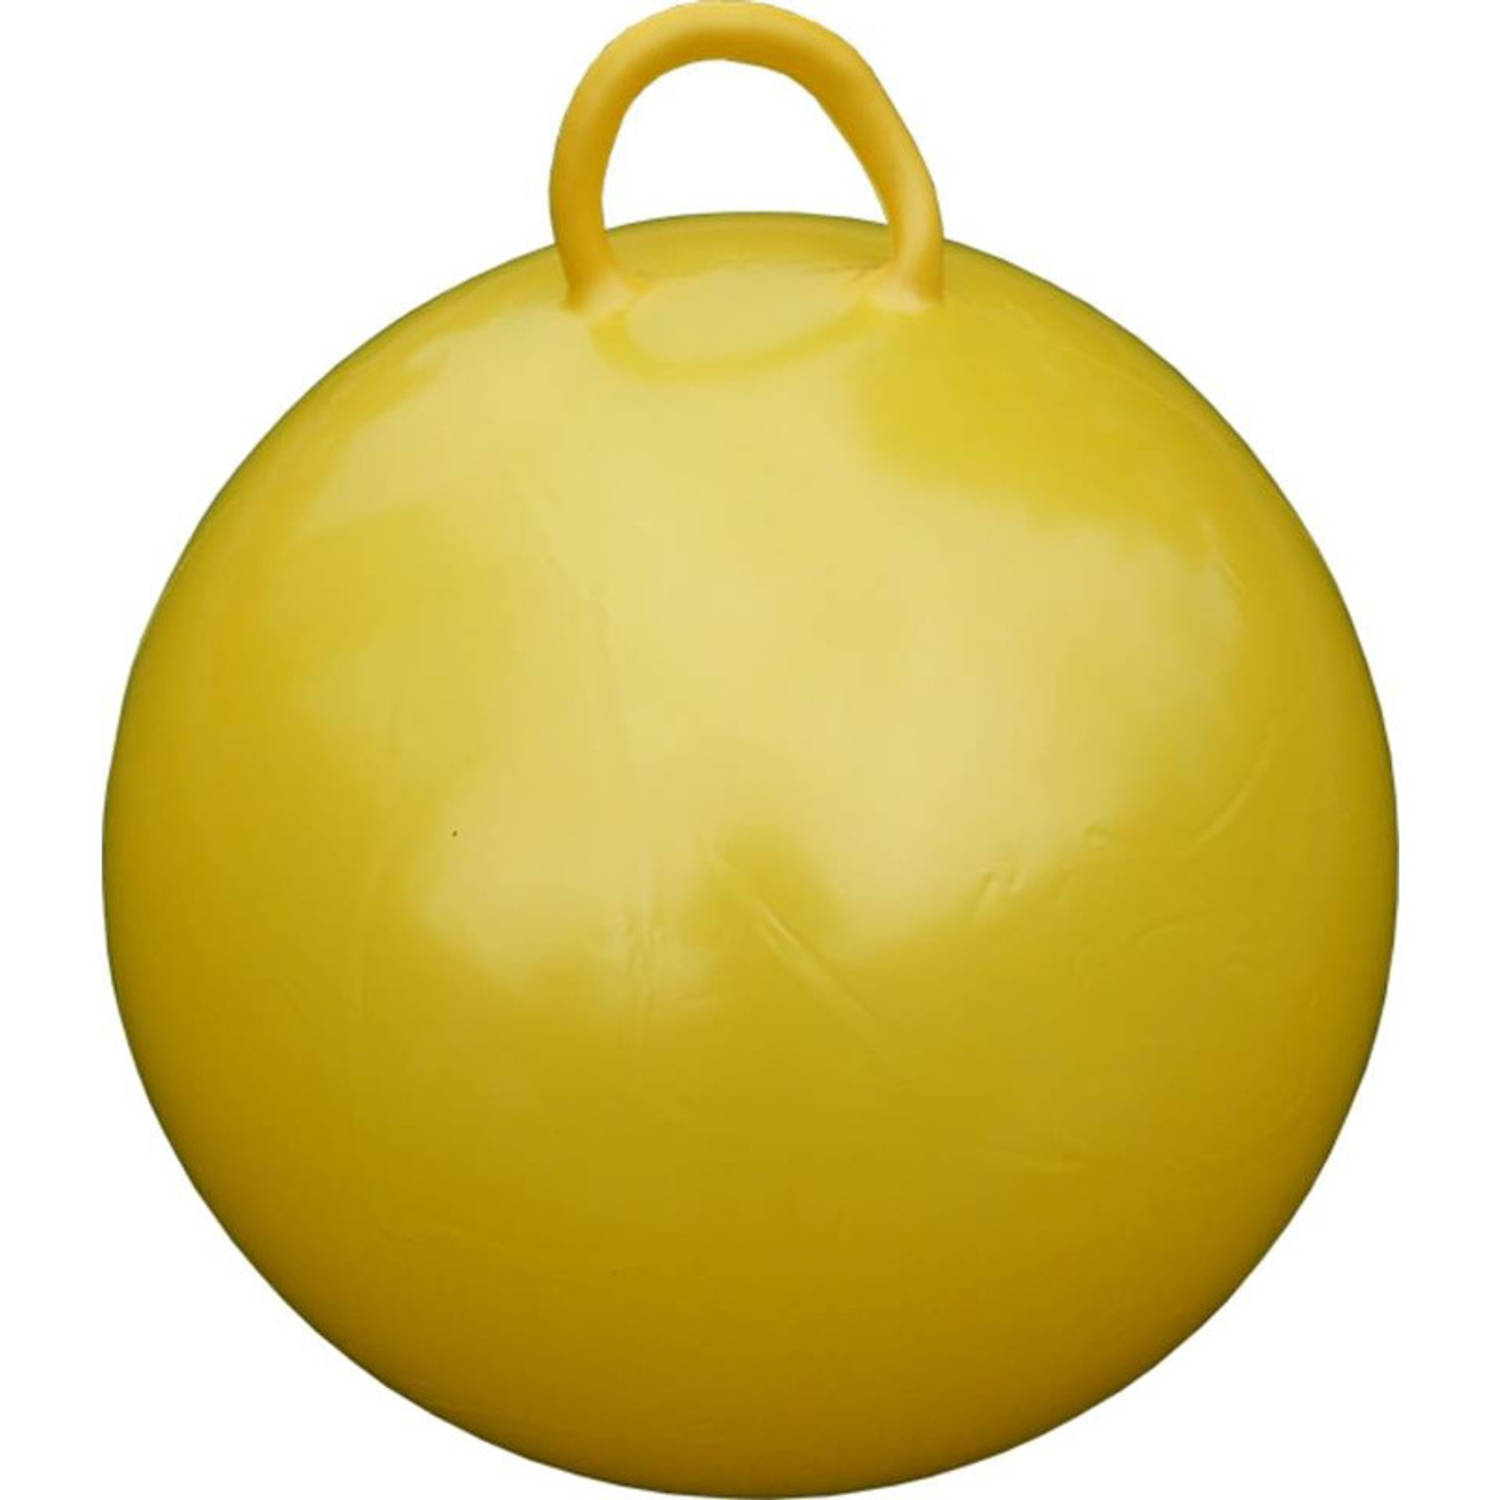 Skippybal 60 Cm Voor Kinderen - Skippyballen Buitenspeelgoed Voor Jongens/meisjes - Geel